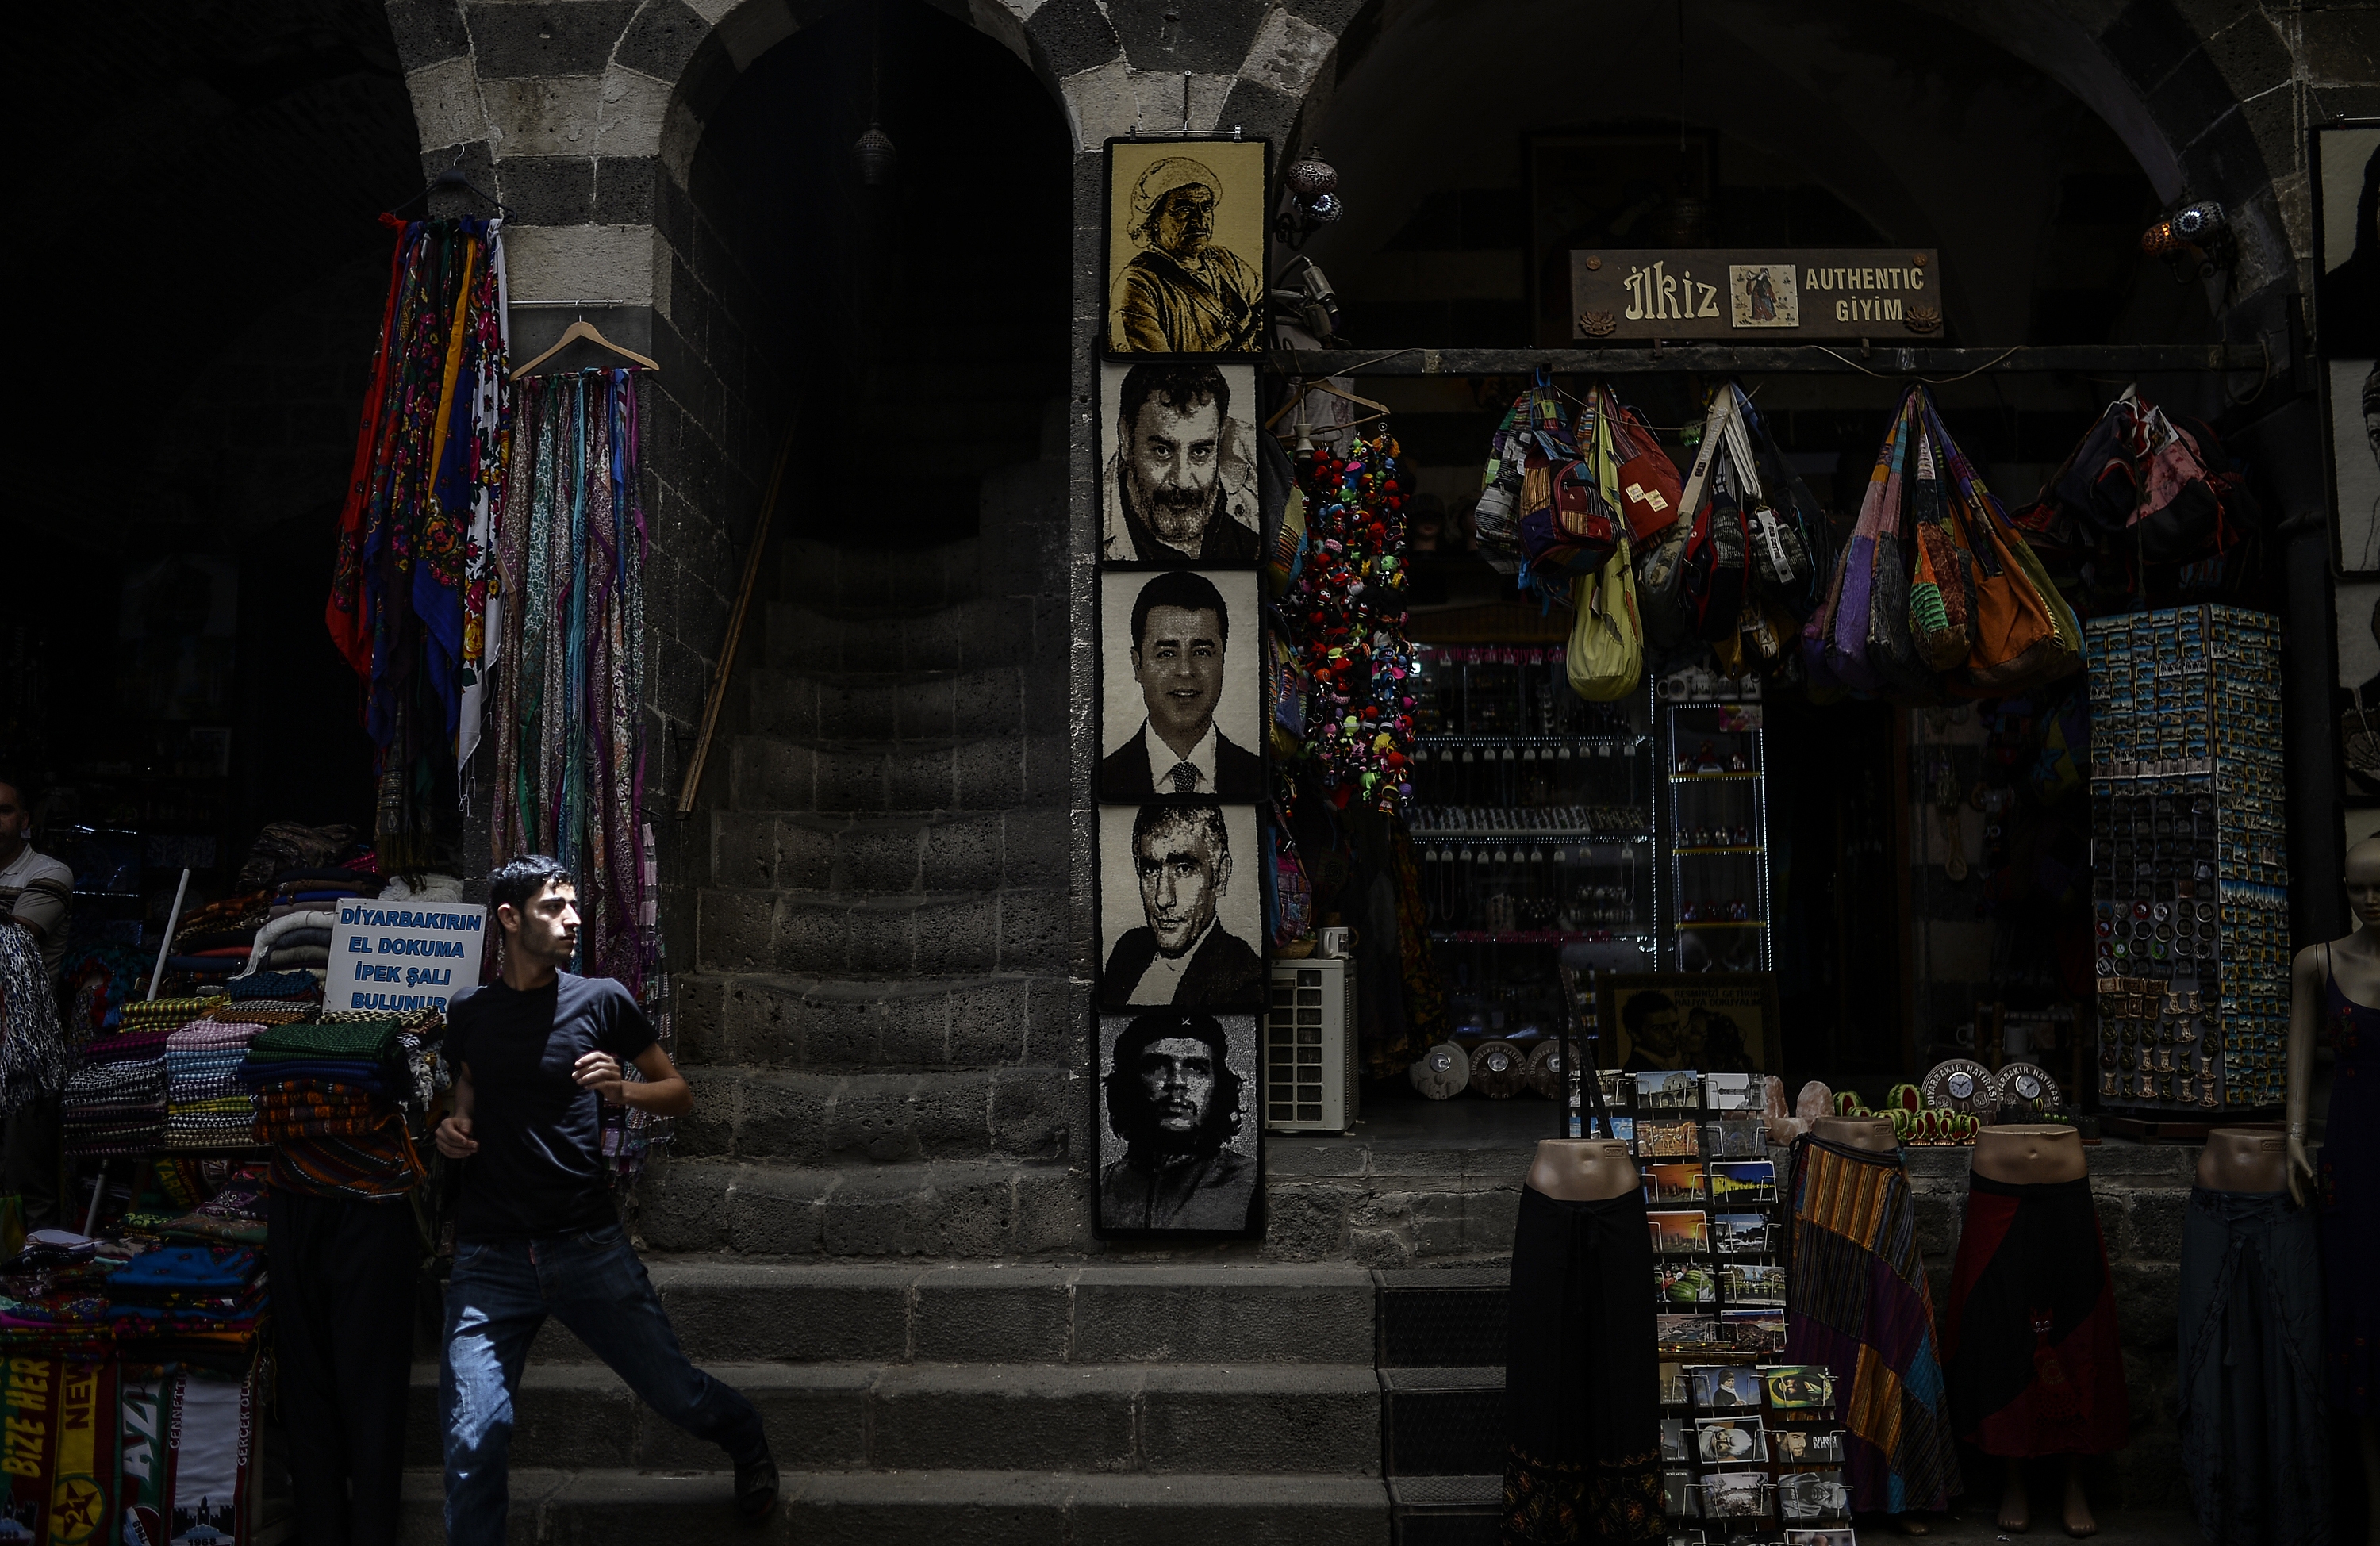  Caminando el mundo: Soplan vientos de cambio en Turquía